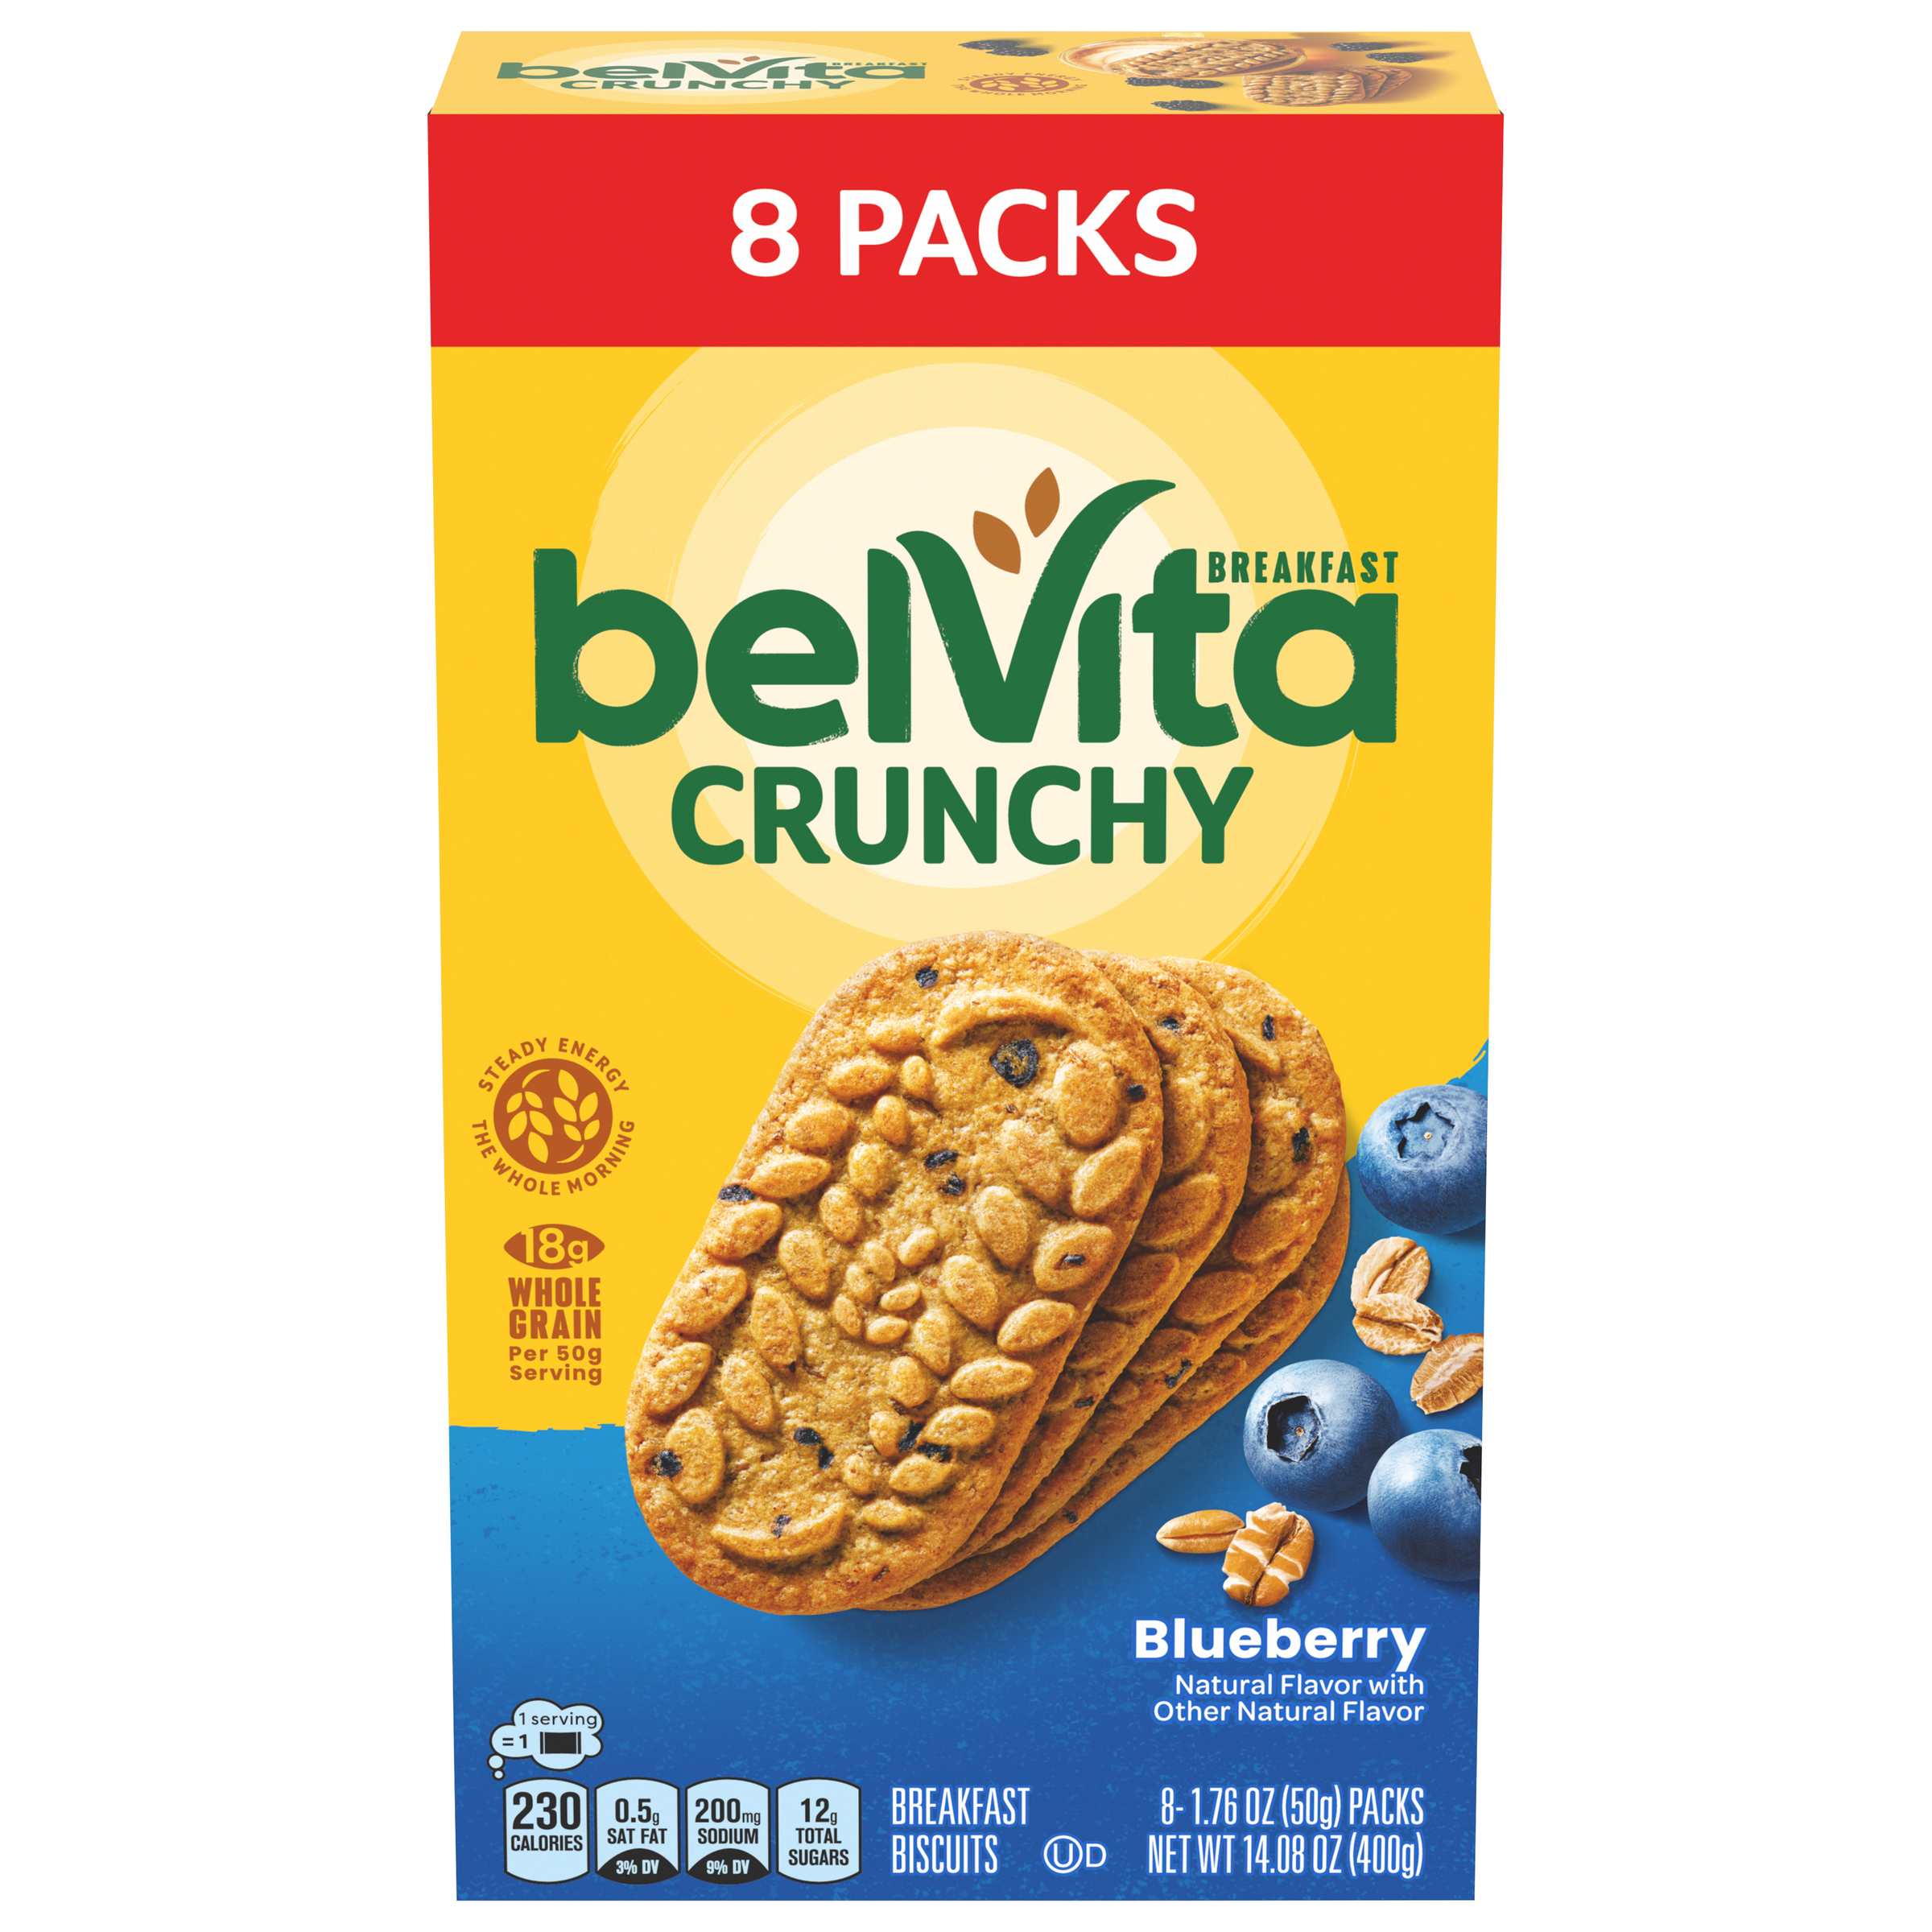 BELVITA Crunchy Blueberry Breakfast Biscuits 14.08 OZ